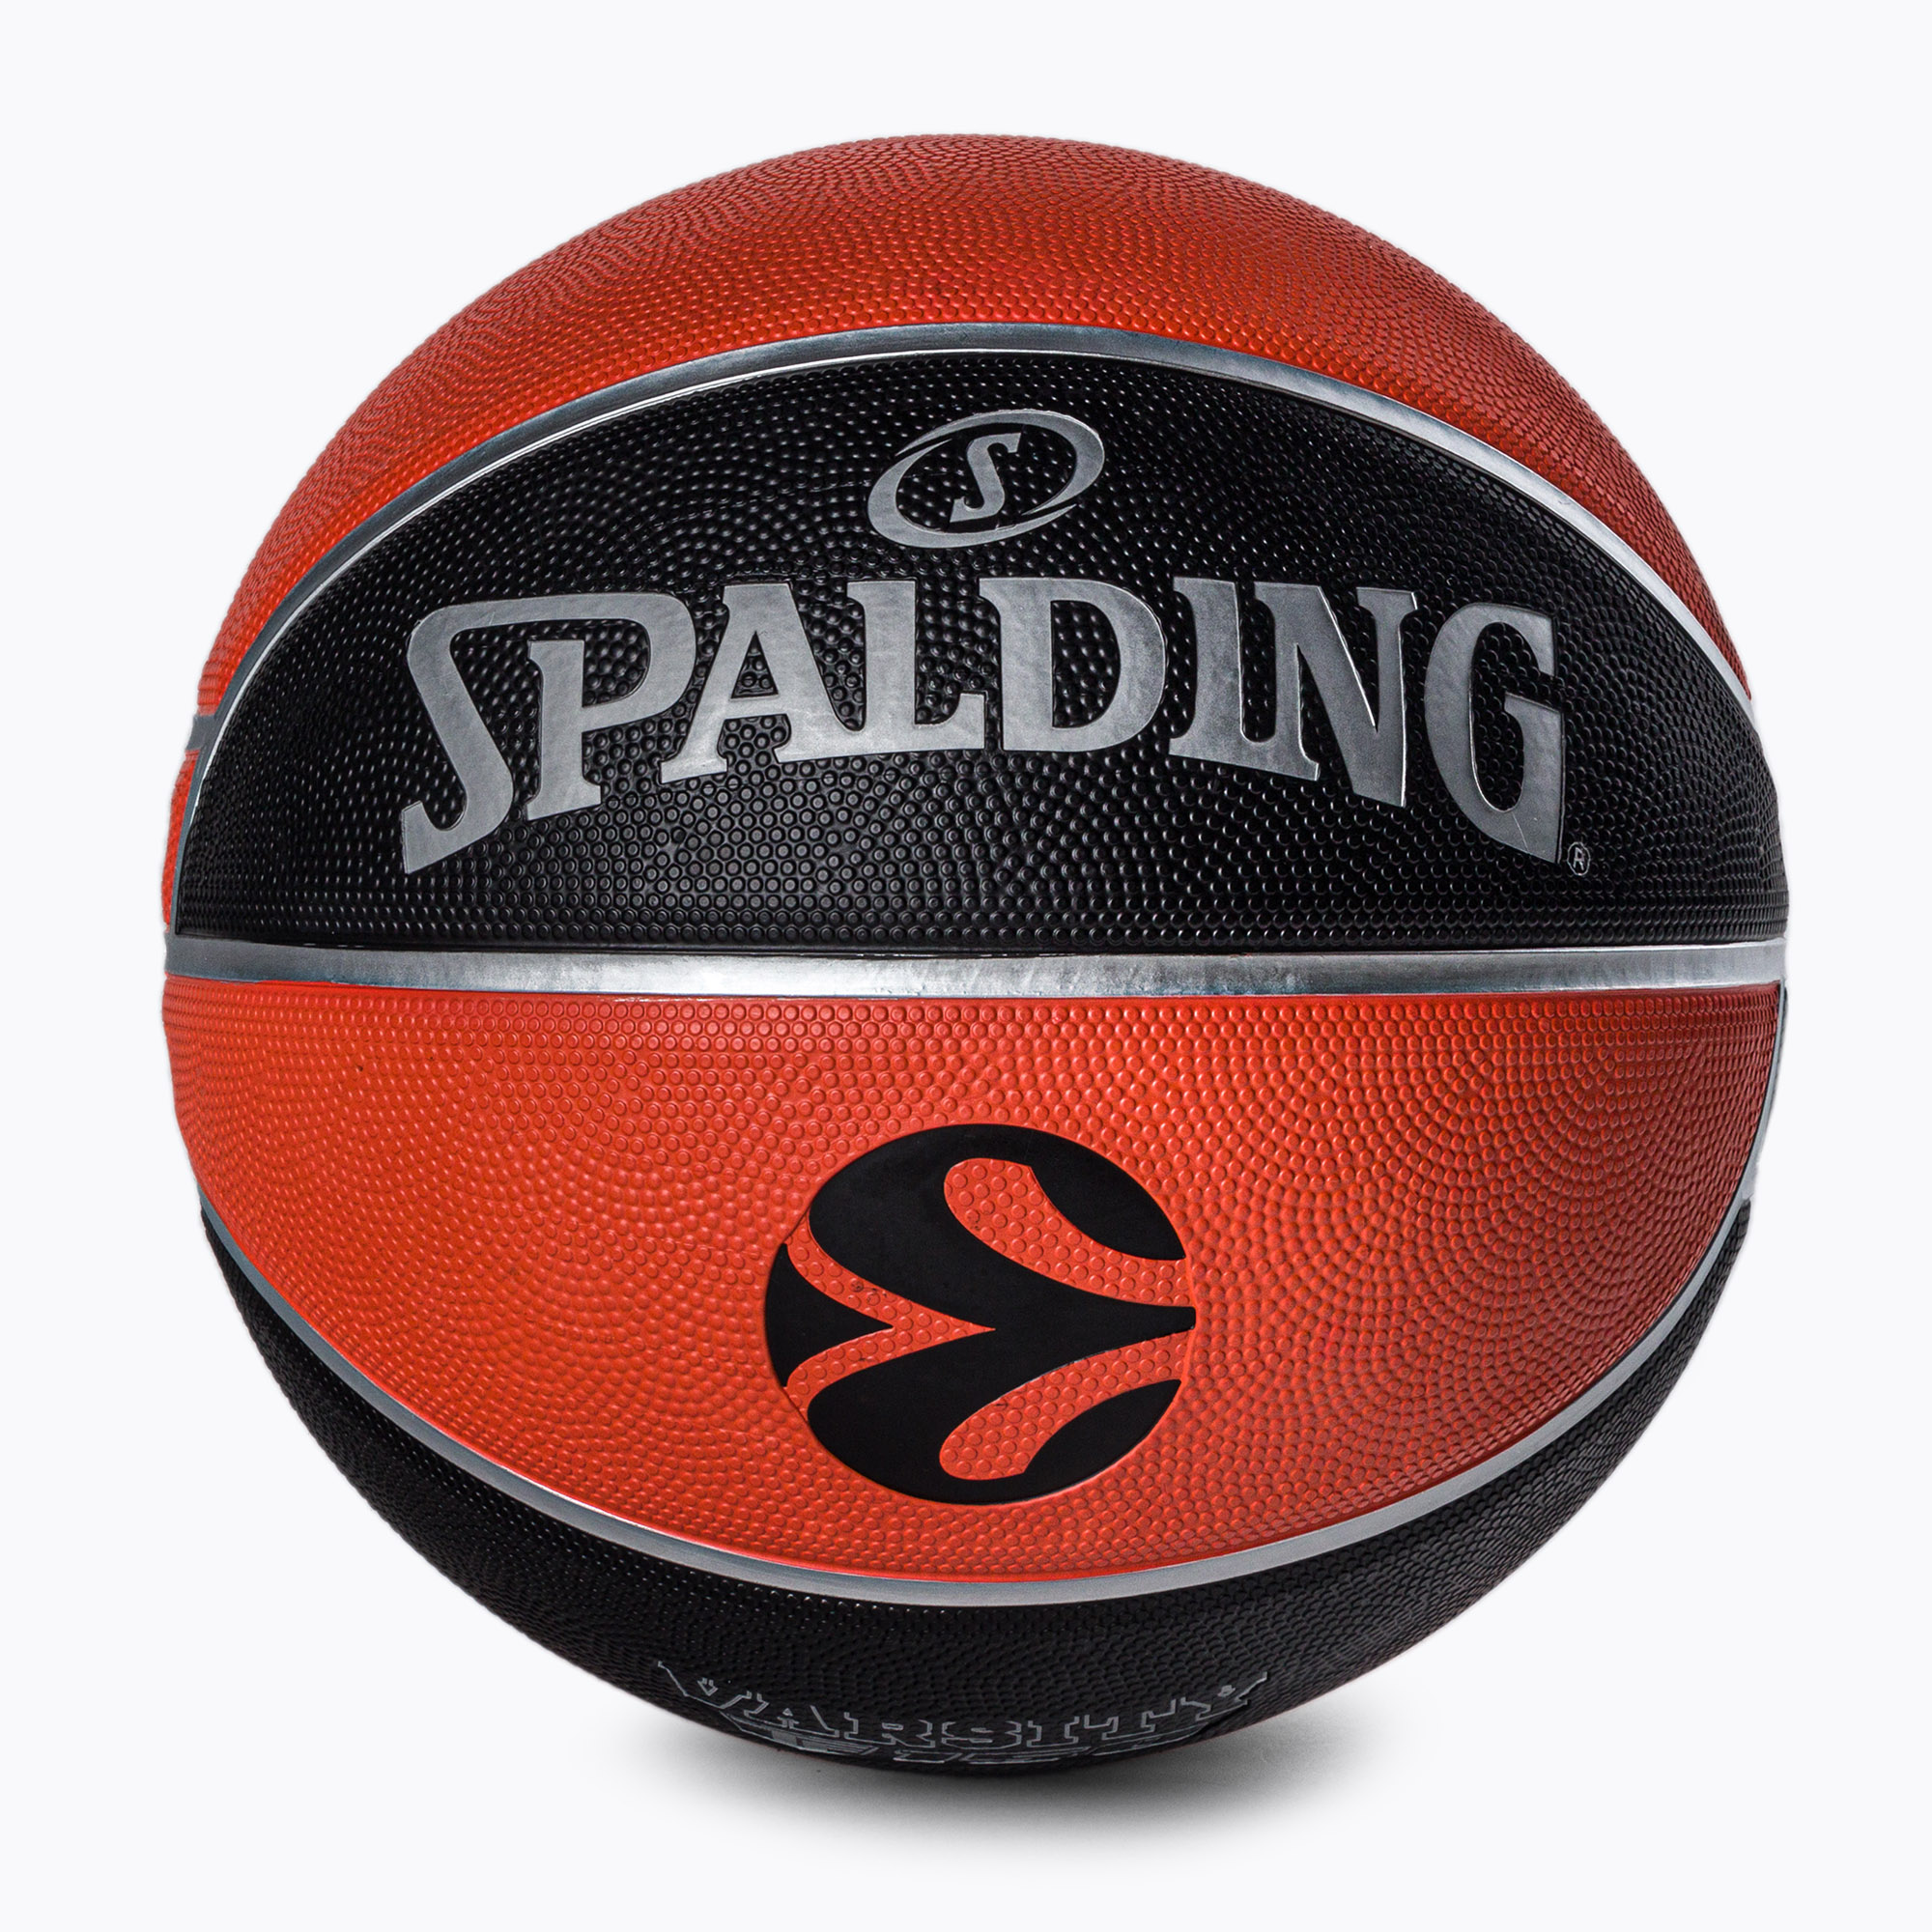 Spalding Euroleague TF-150 Legacy basketbal oranžová a čierna 84506Z veľkosť 7